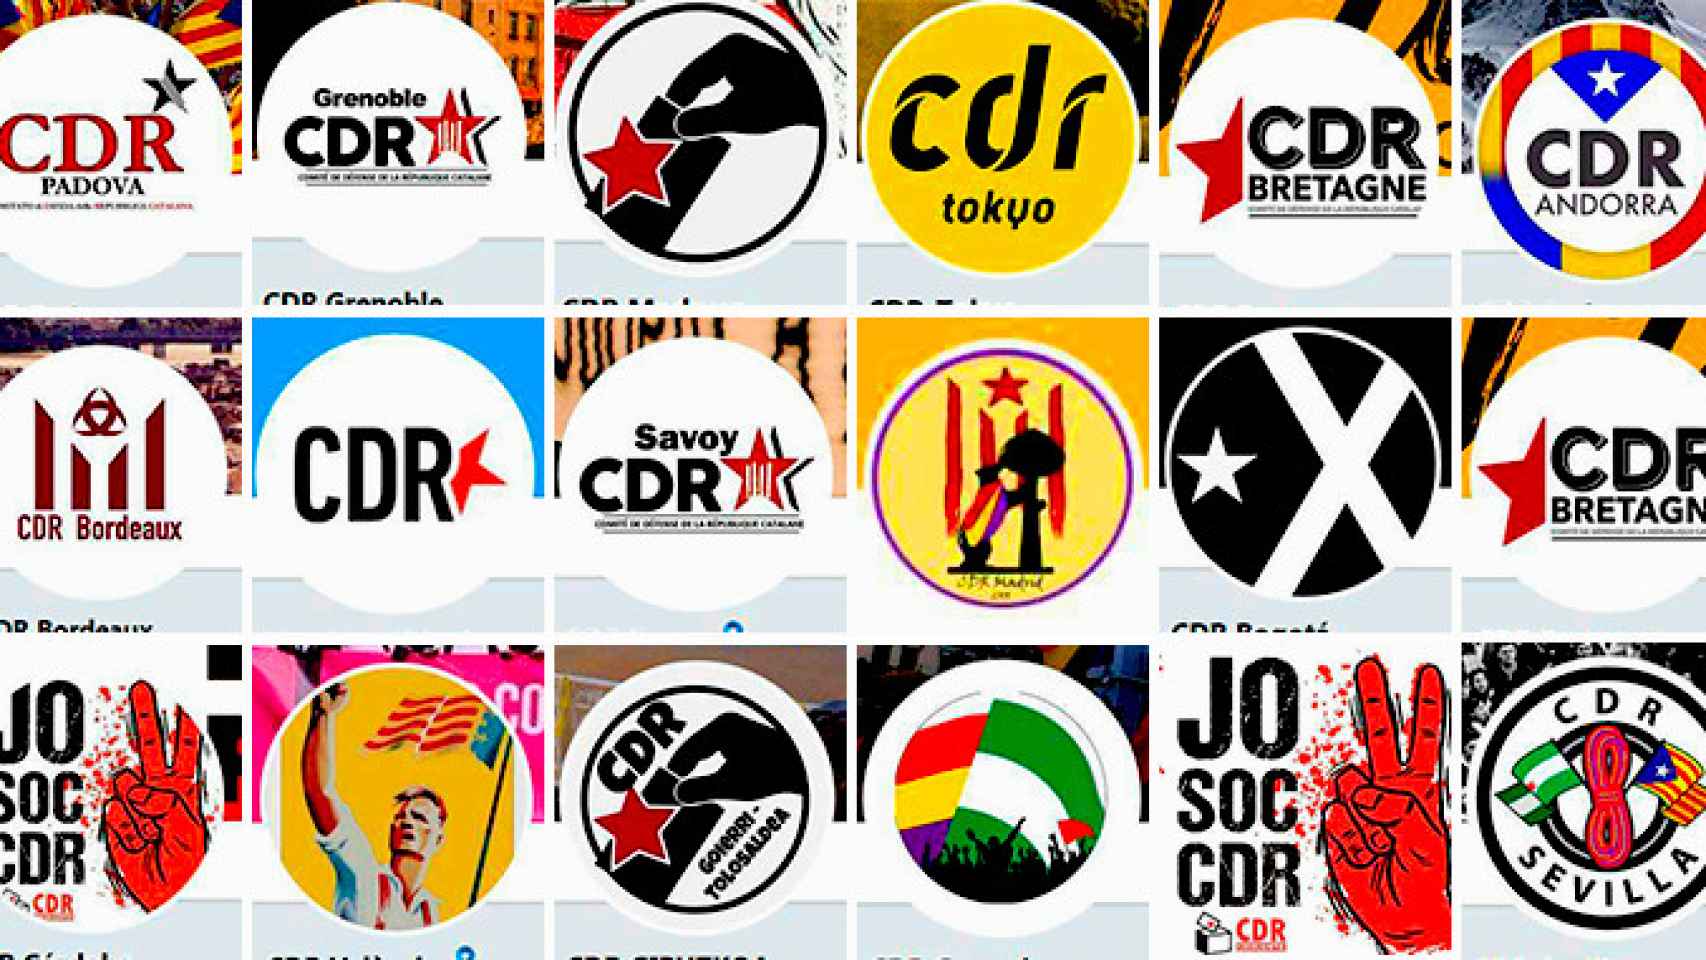 Logos de los CDR que actúan más allá de las fronteras catalanas / CG